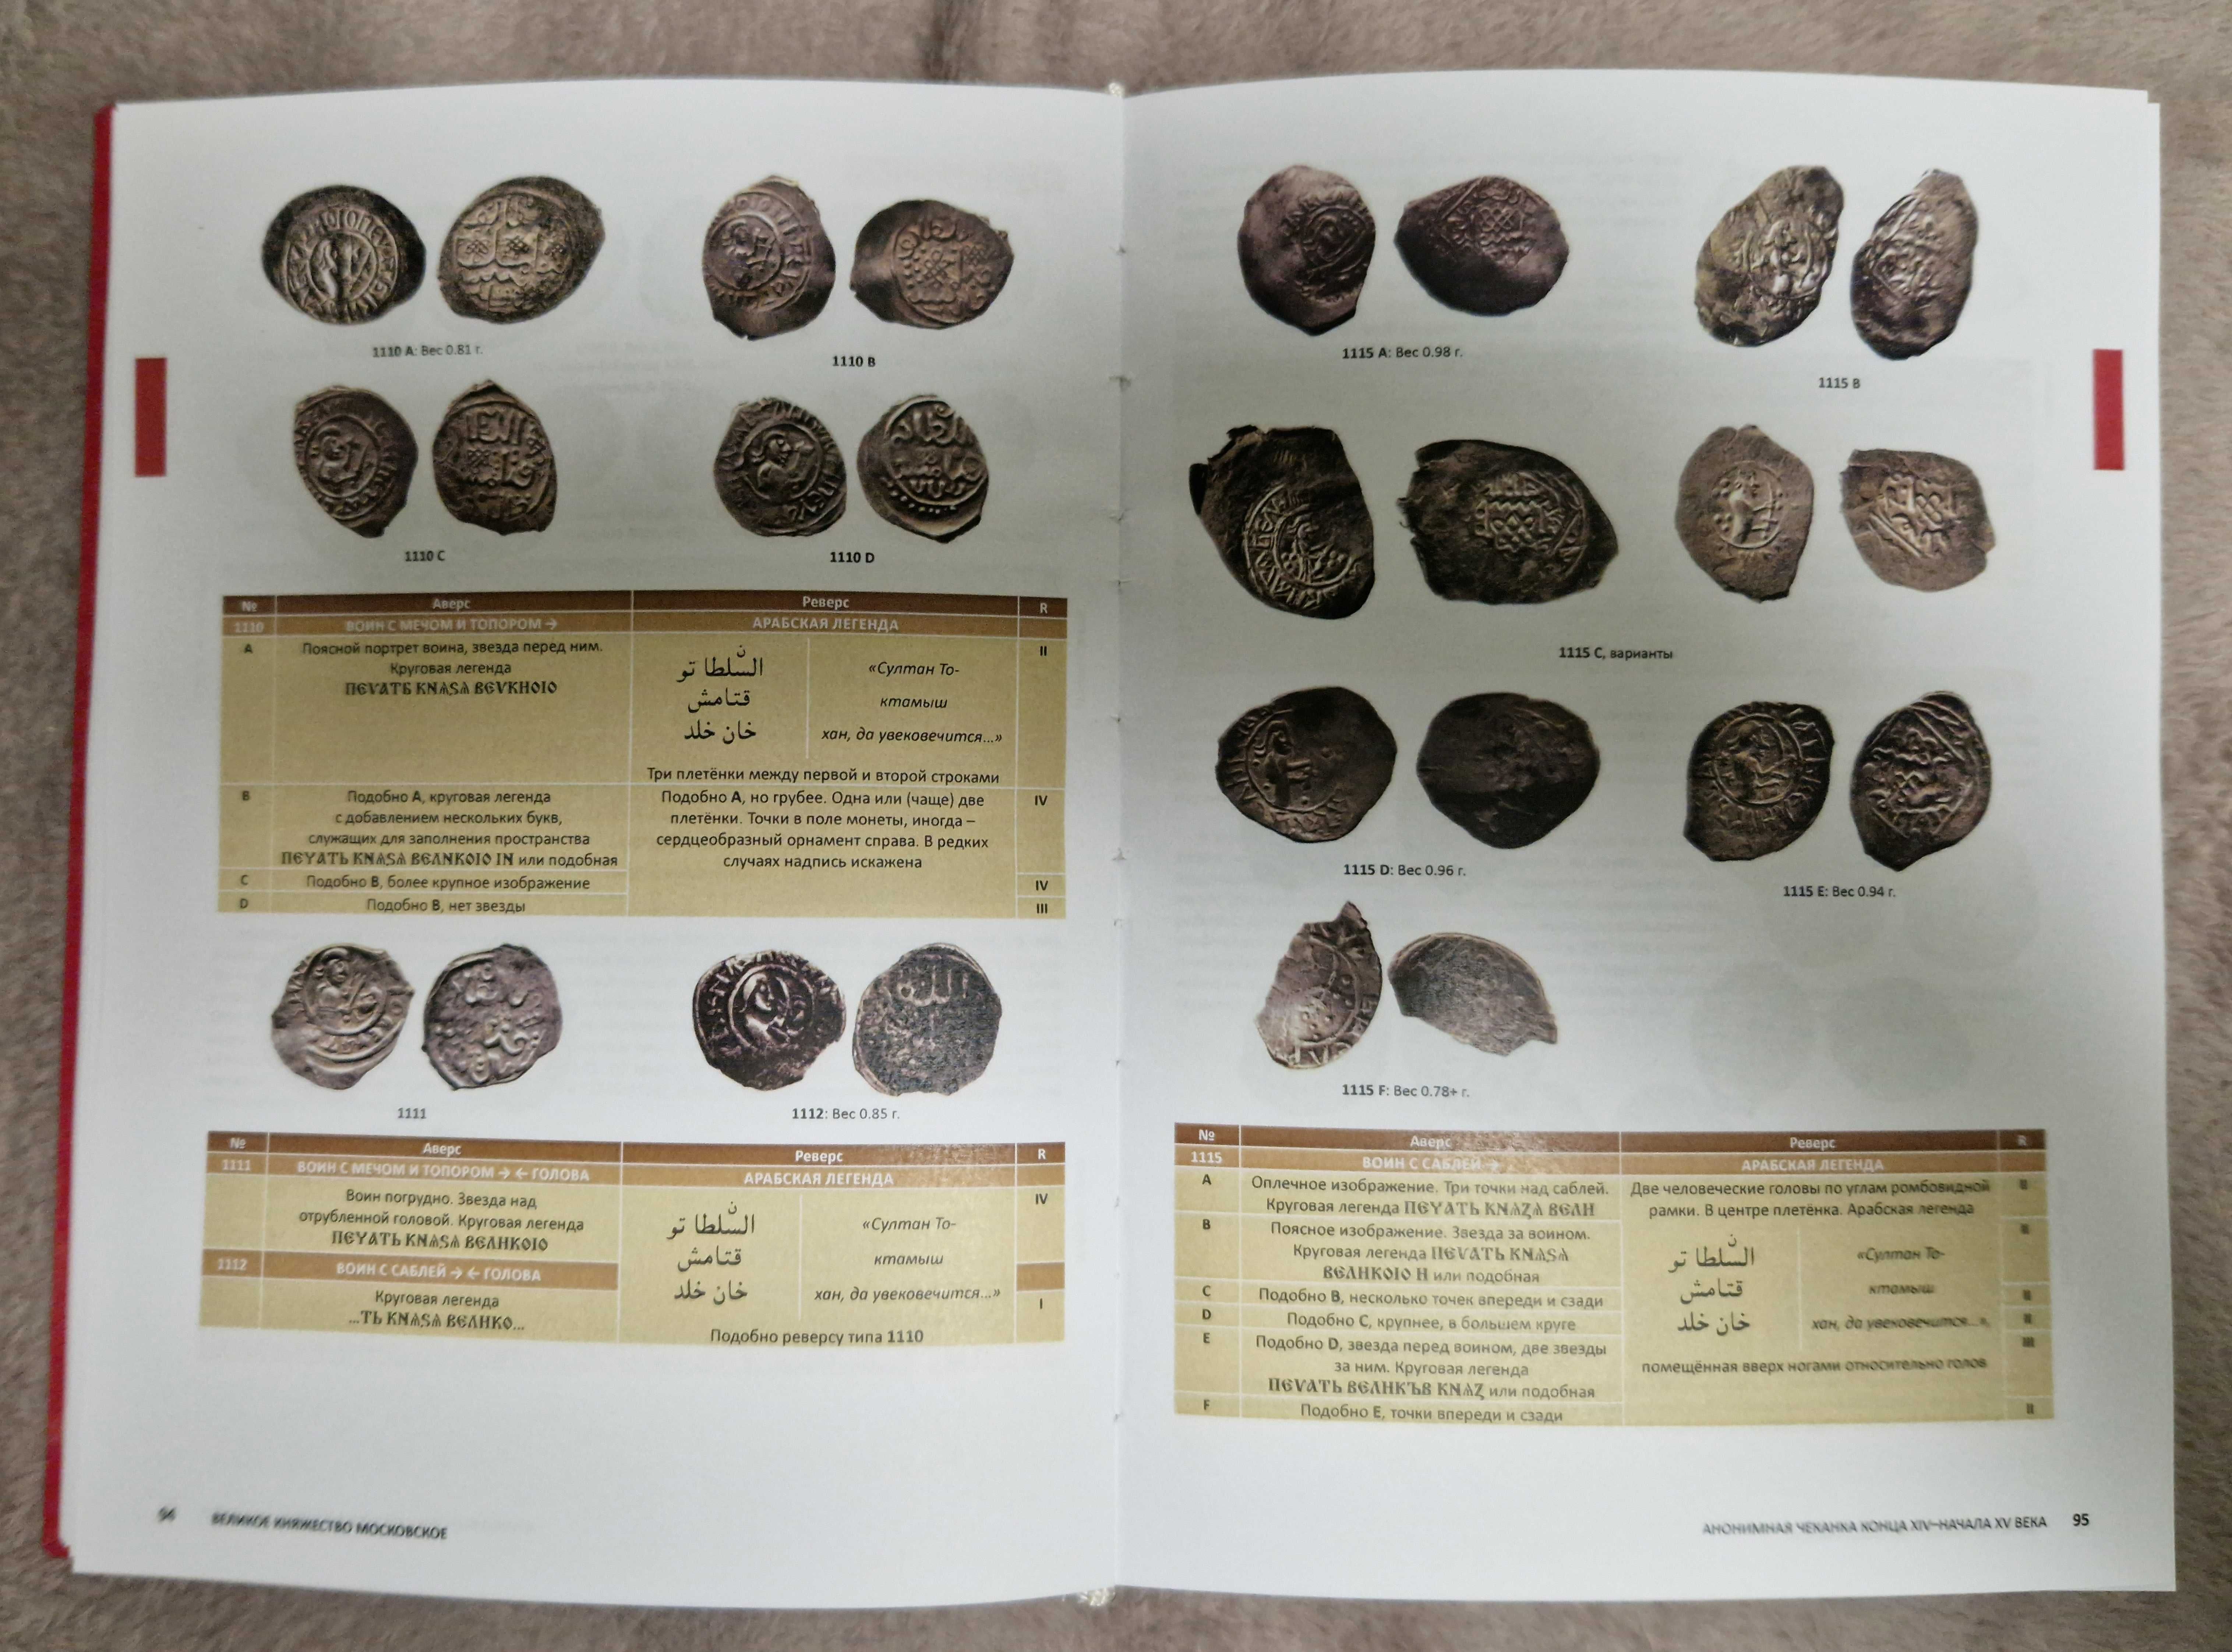 Русские средневековые монеты - Гулецкий Д.В., Петрунин К.М.- 2017